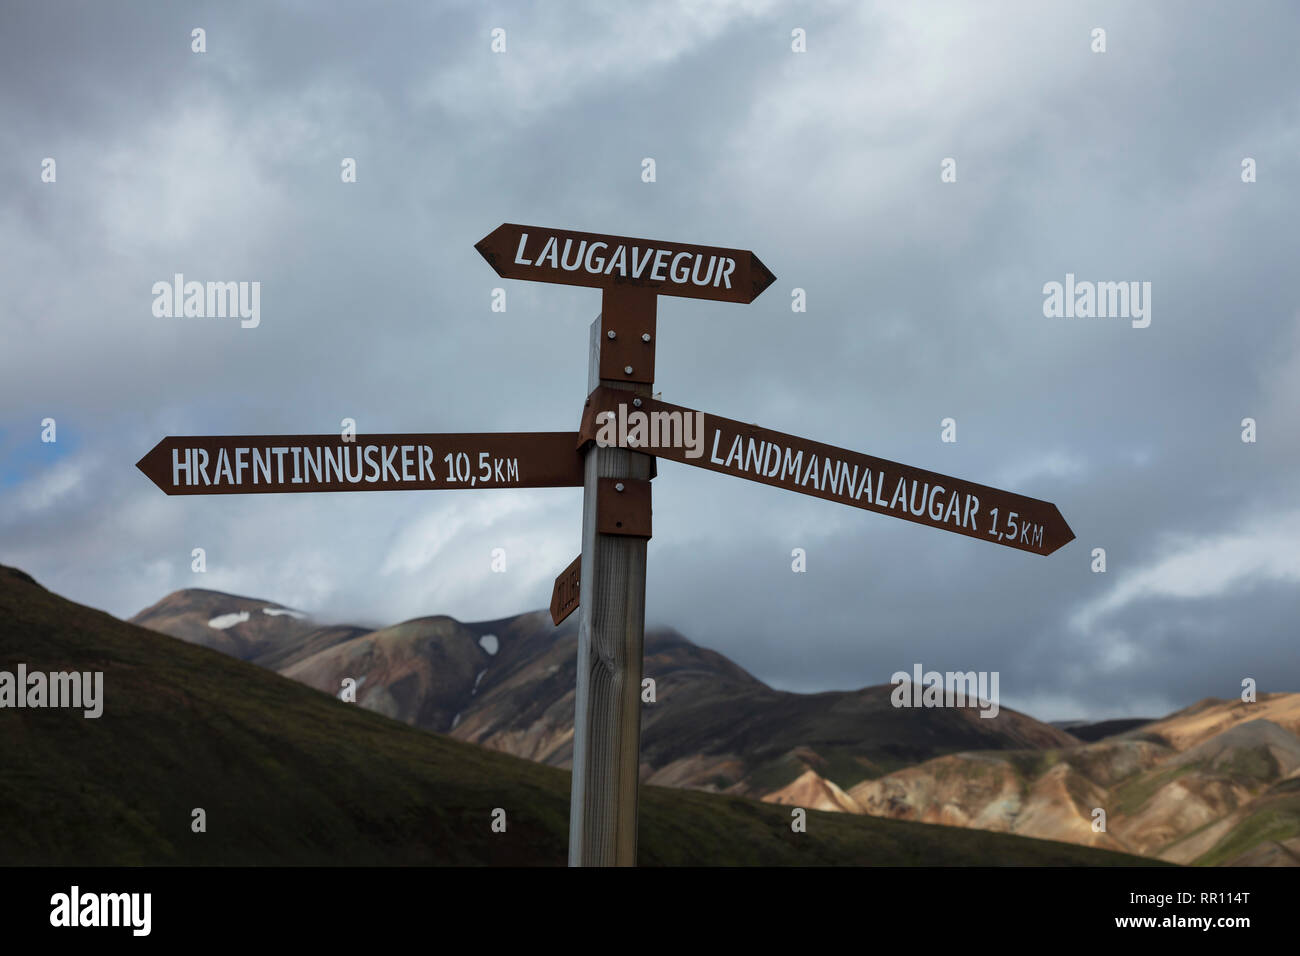 Wandern Wegweiser Kennzeichnung der Laugavegur Trail in der Nähe von Landmannalaugar. Zentrale Hochland, Sudhurland, Island. Stockfoto